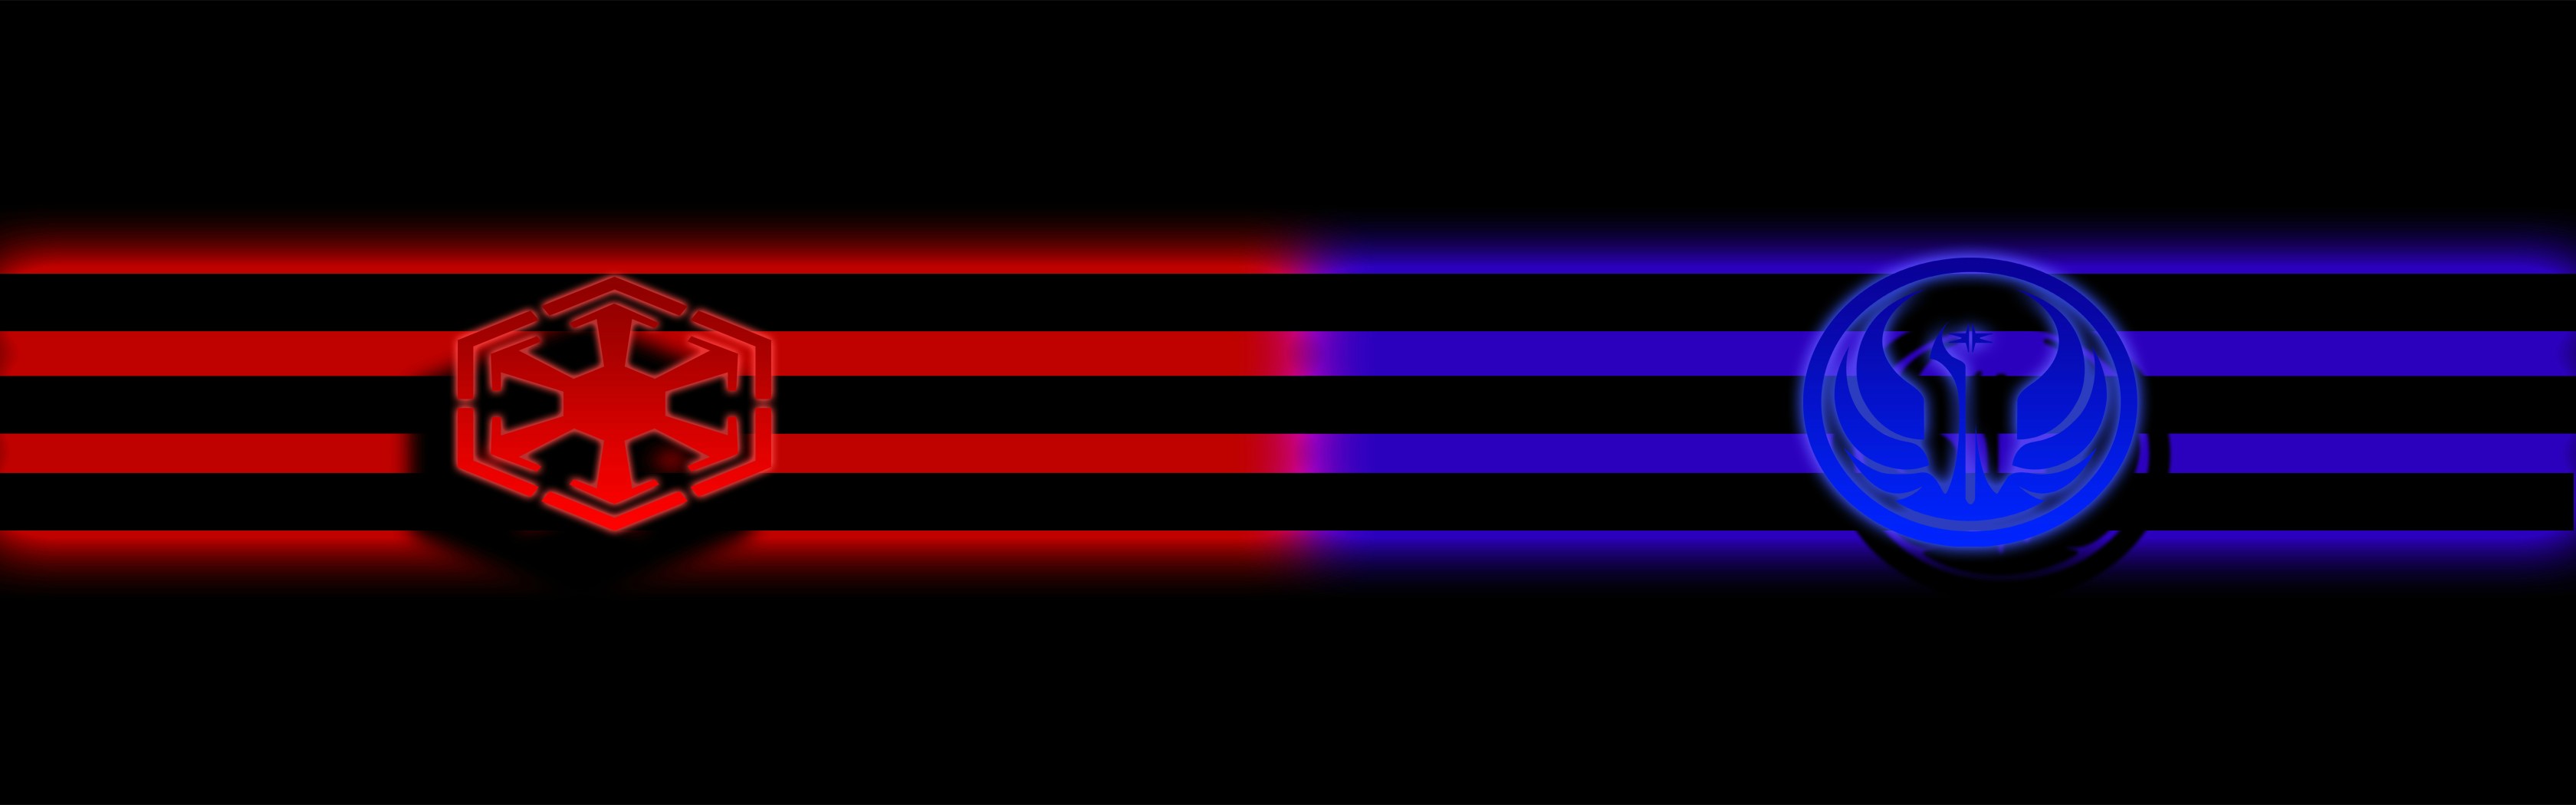 fondo de pantalla de doble monitor de star wars,ligero,azul eléctrico,neón,violeta,iluminación de efectos visuales